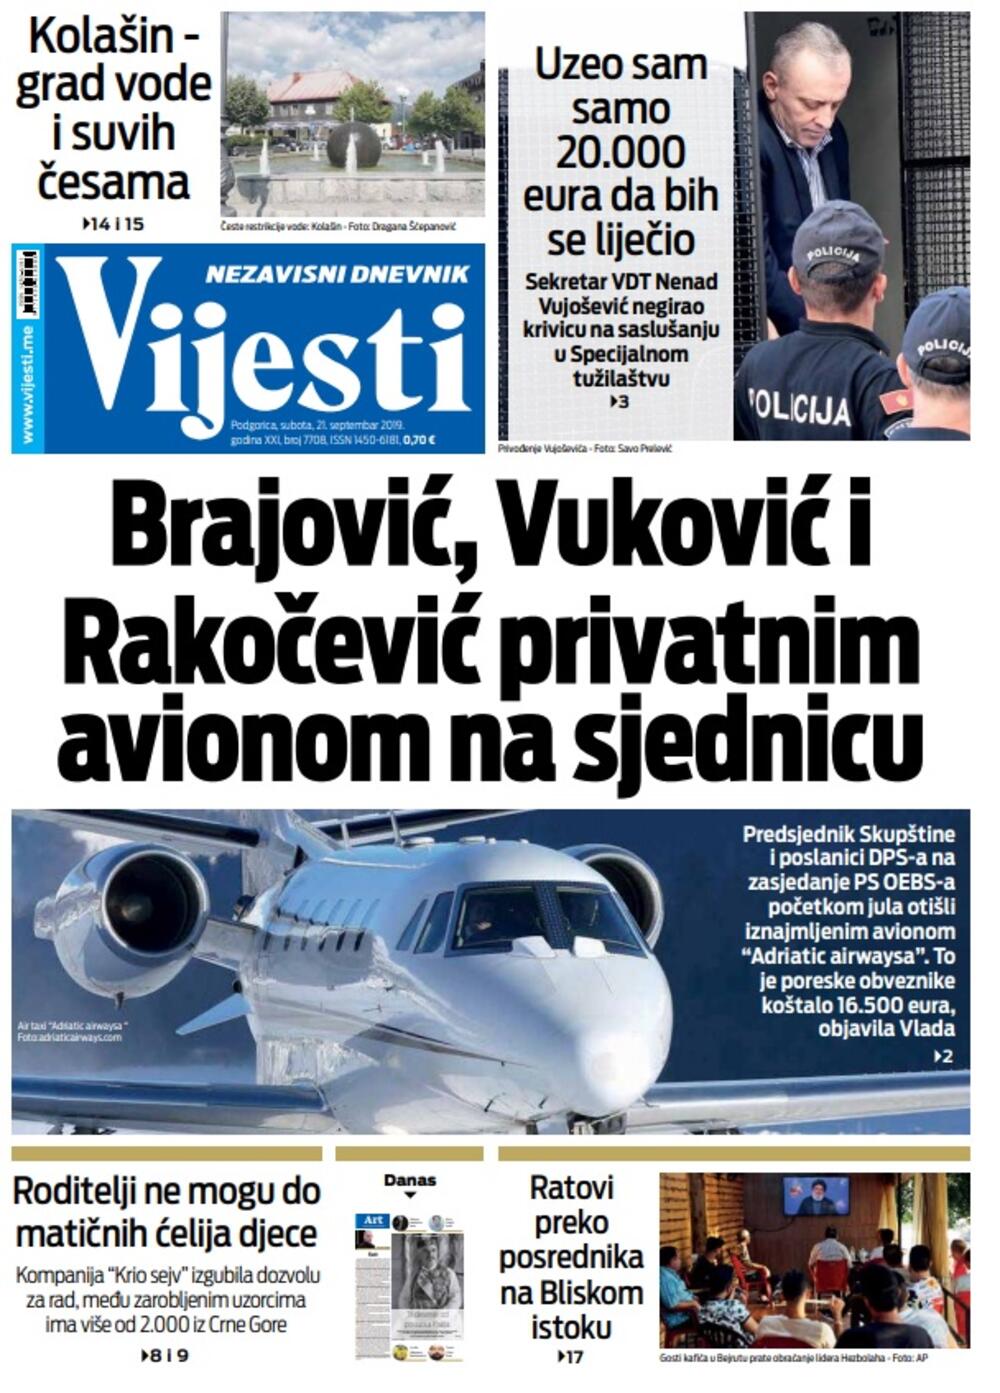 Naslovna strana "Vijesti" za subotu 21. septembar, Foto: Vijesti